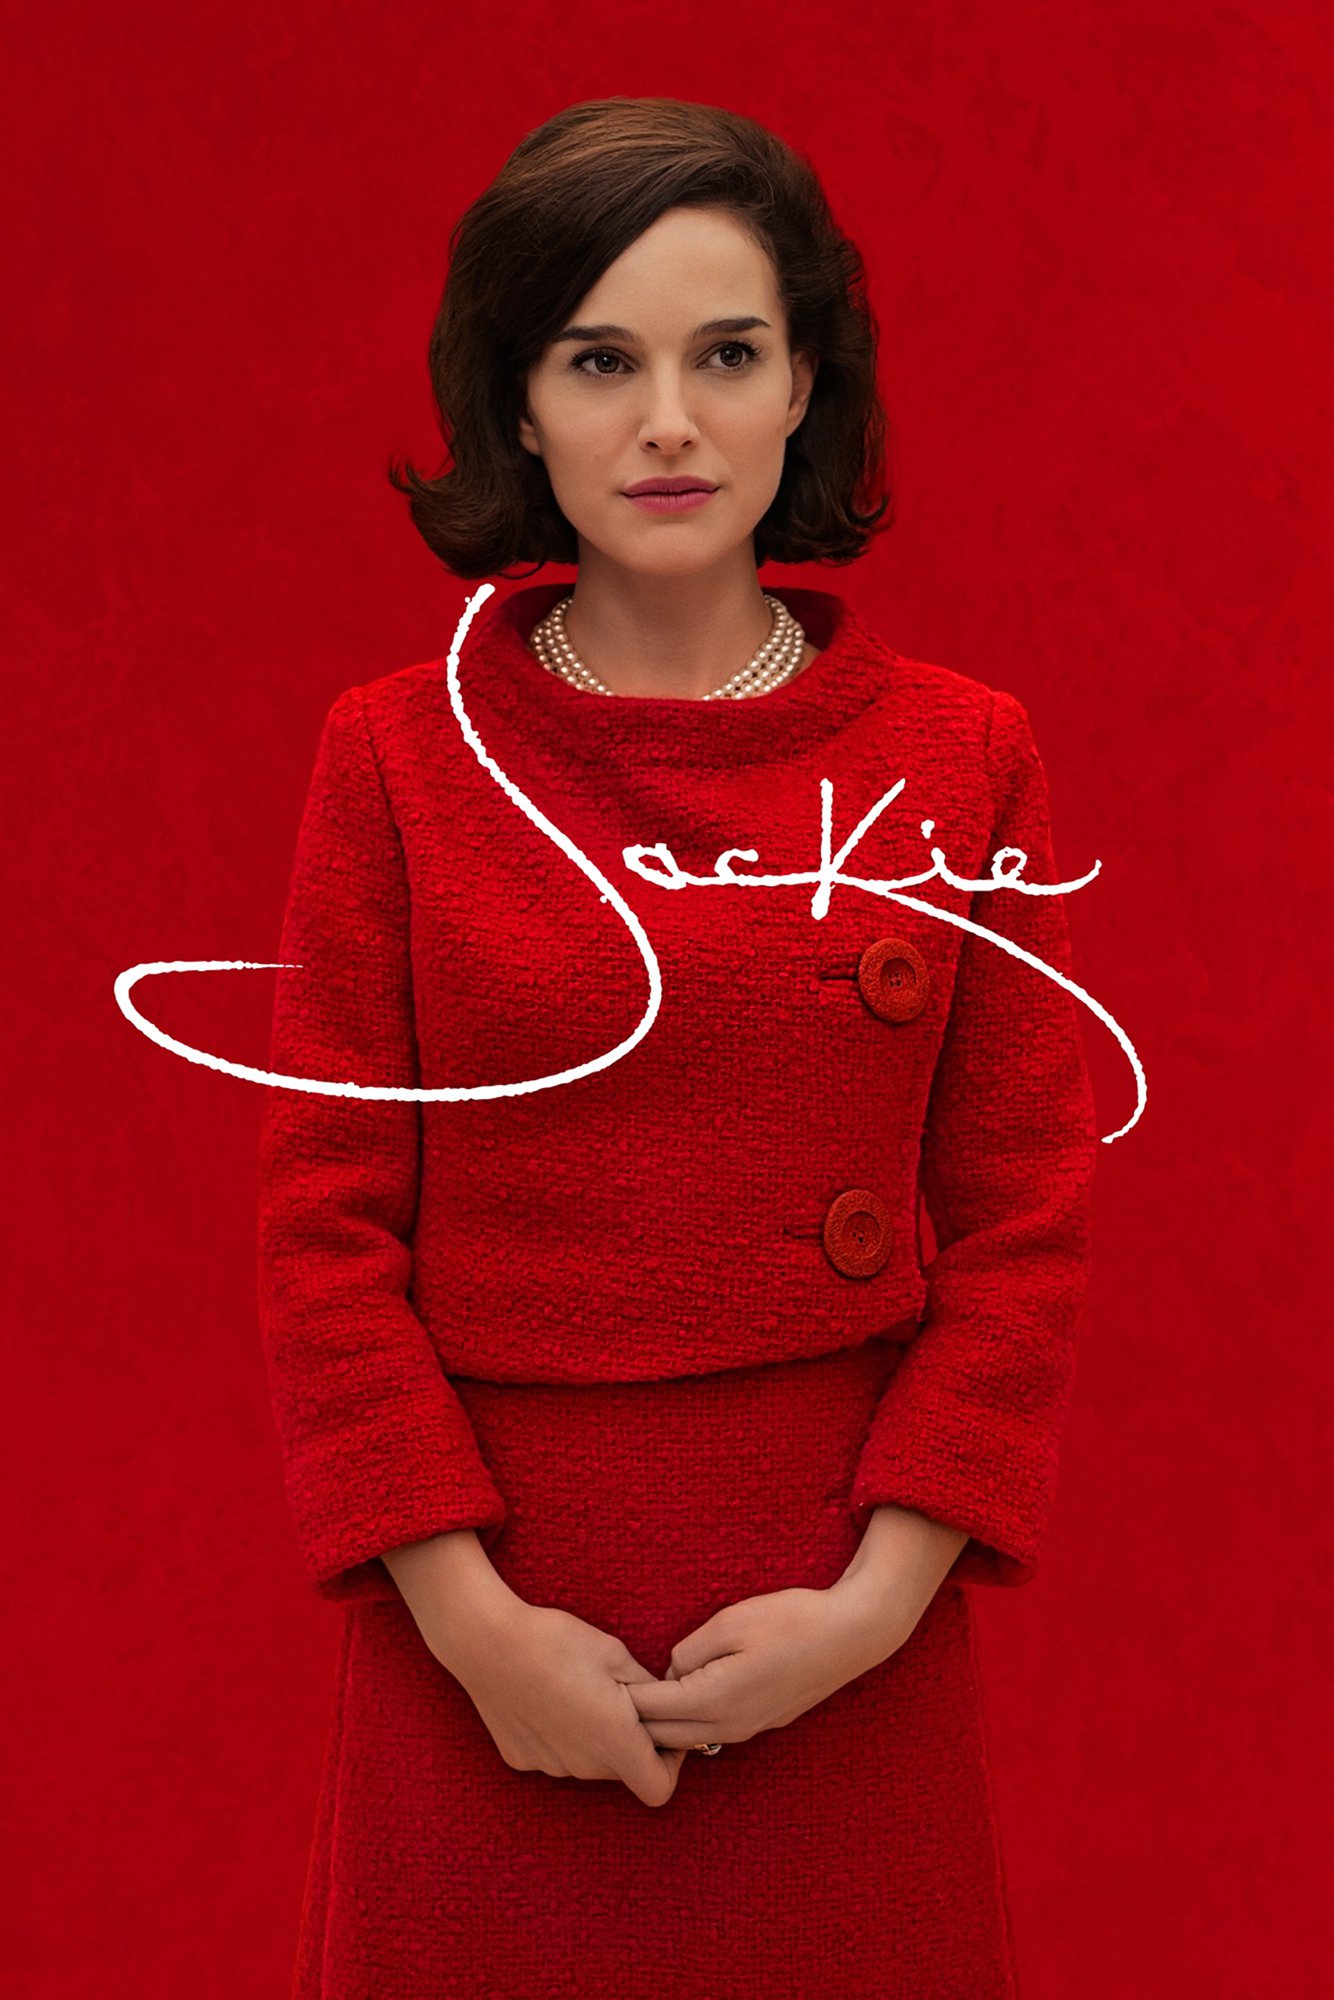 Poster de la película "Jackie"